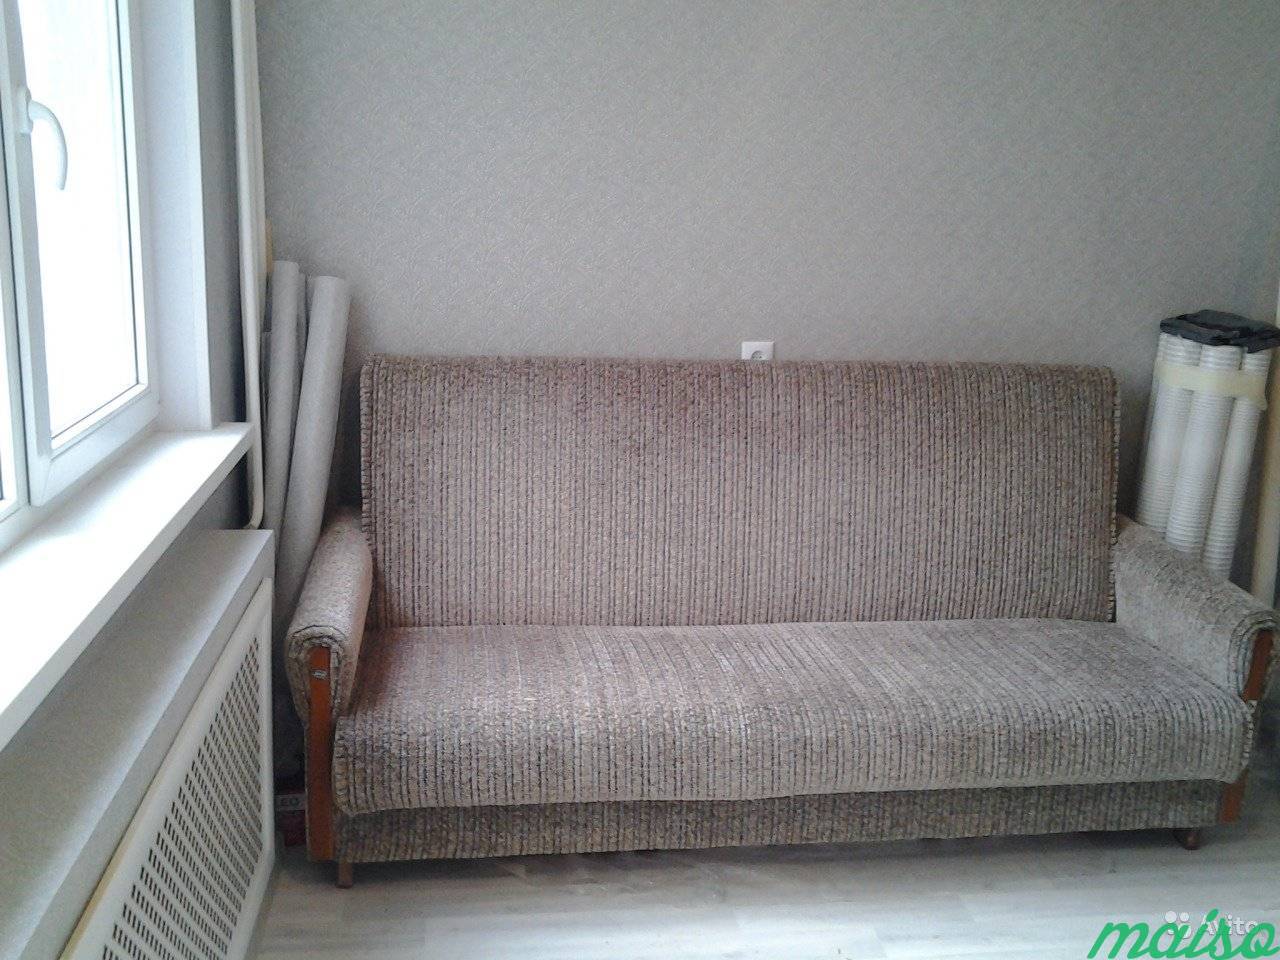 Нежилое помещение в жилом доме с ремонтом, 20 м в Санкт-Петербурге. Фото 6